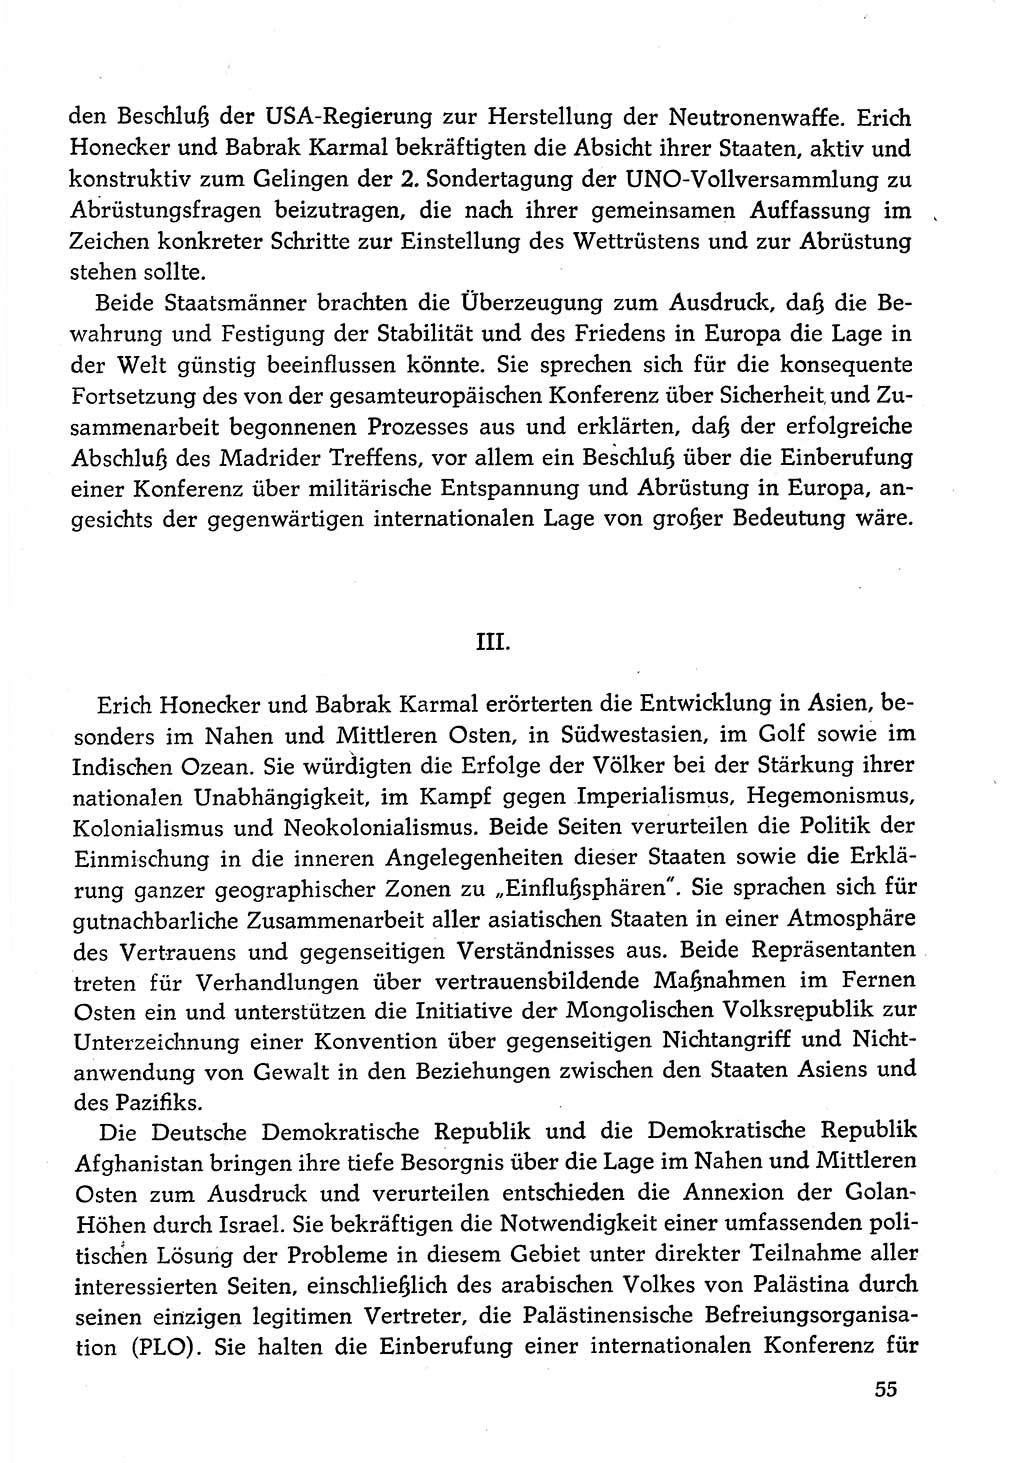 Dokumente der Sozialistischen Einheitspartei Deutschlands (SED) [Deutsche Demokratische Republik (DDR)] 1982-1983, Seite 55 (Dok. SED DDR 1982-1983, S. 55)